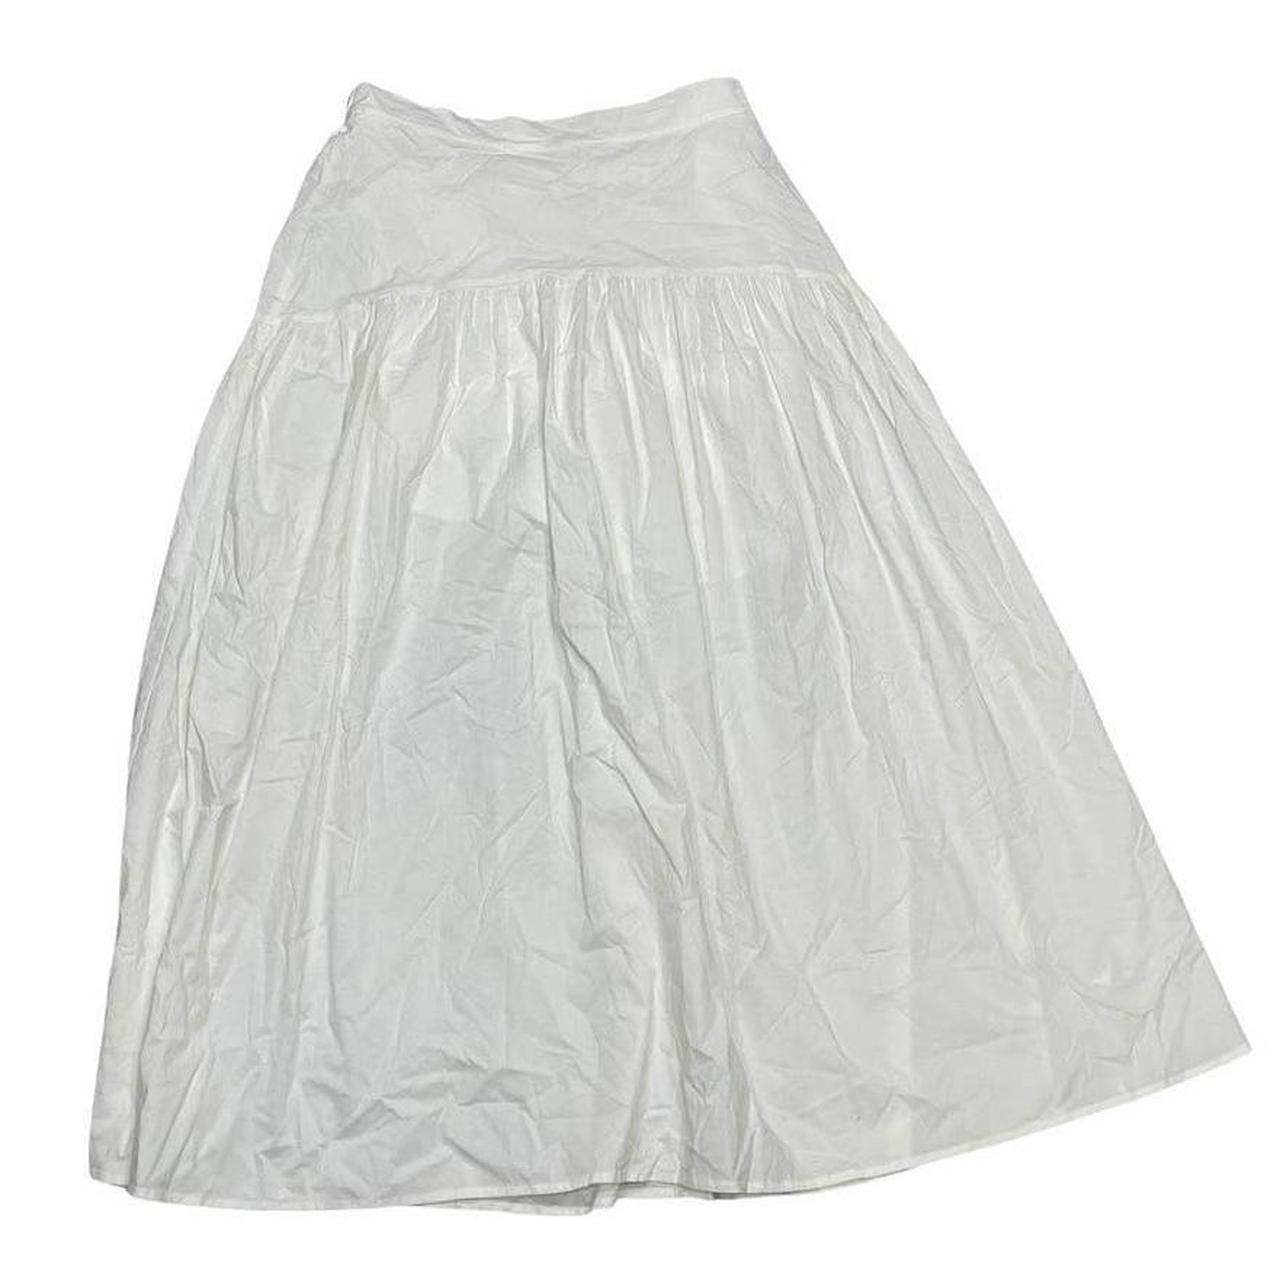 Women's White Skirt (2)